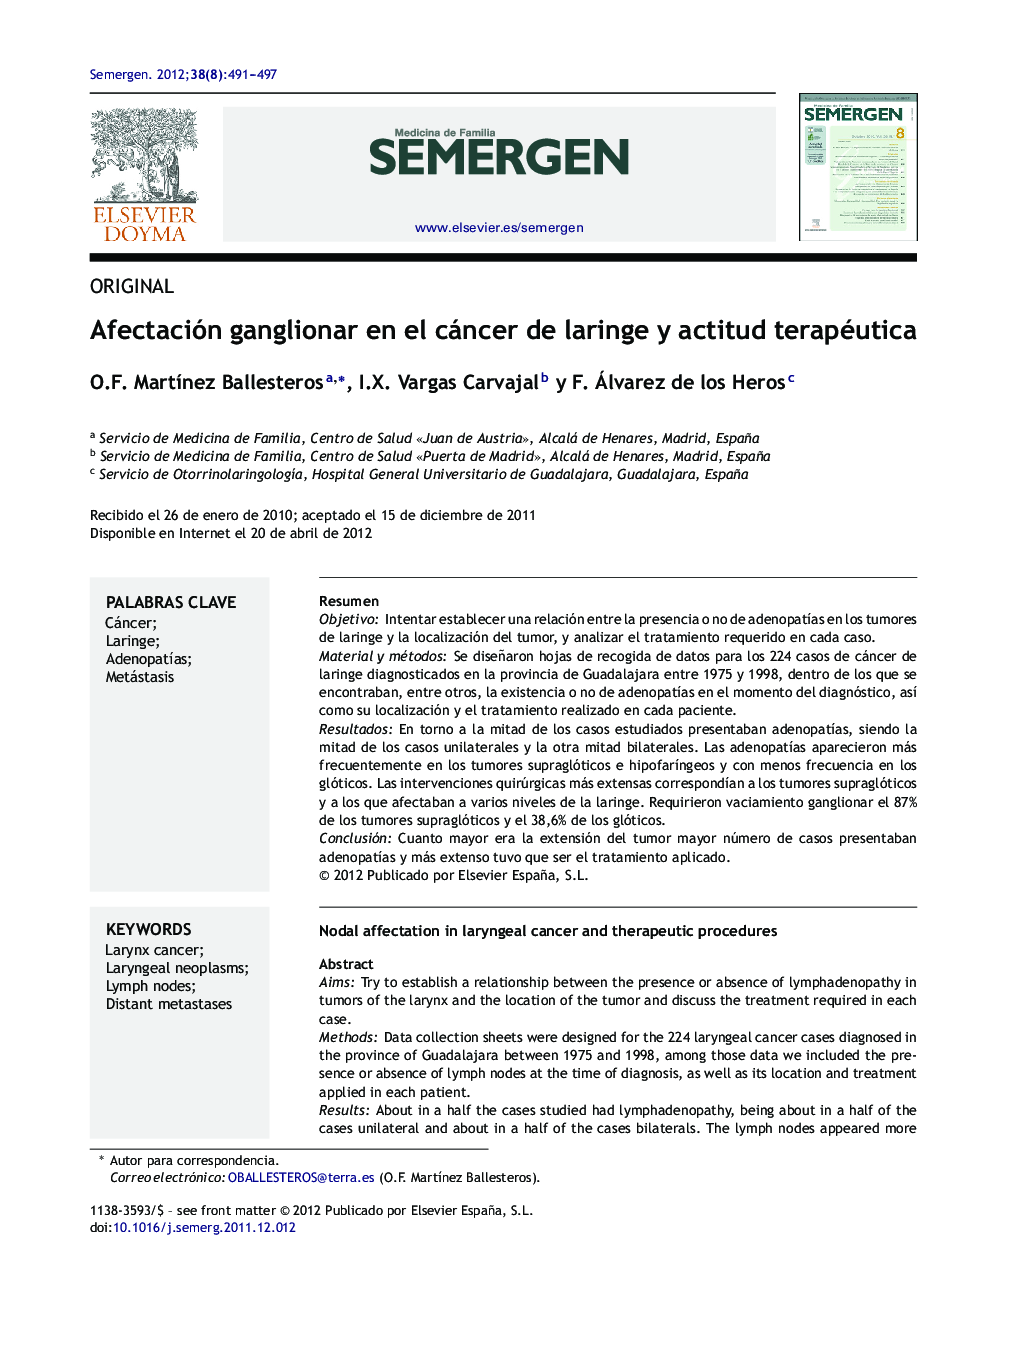 Afectación ganglionar en el cáncer de laringe y actitud terapéutica